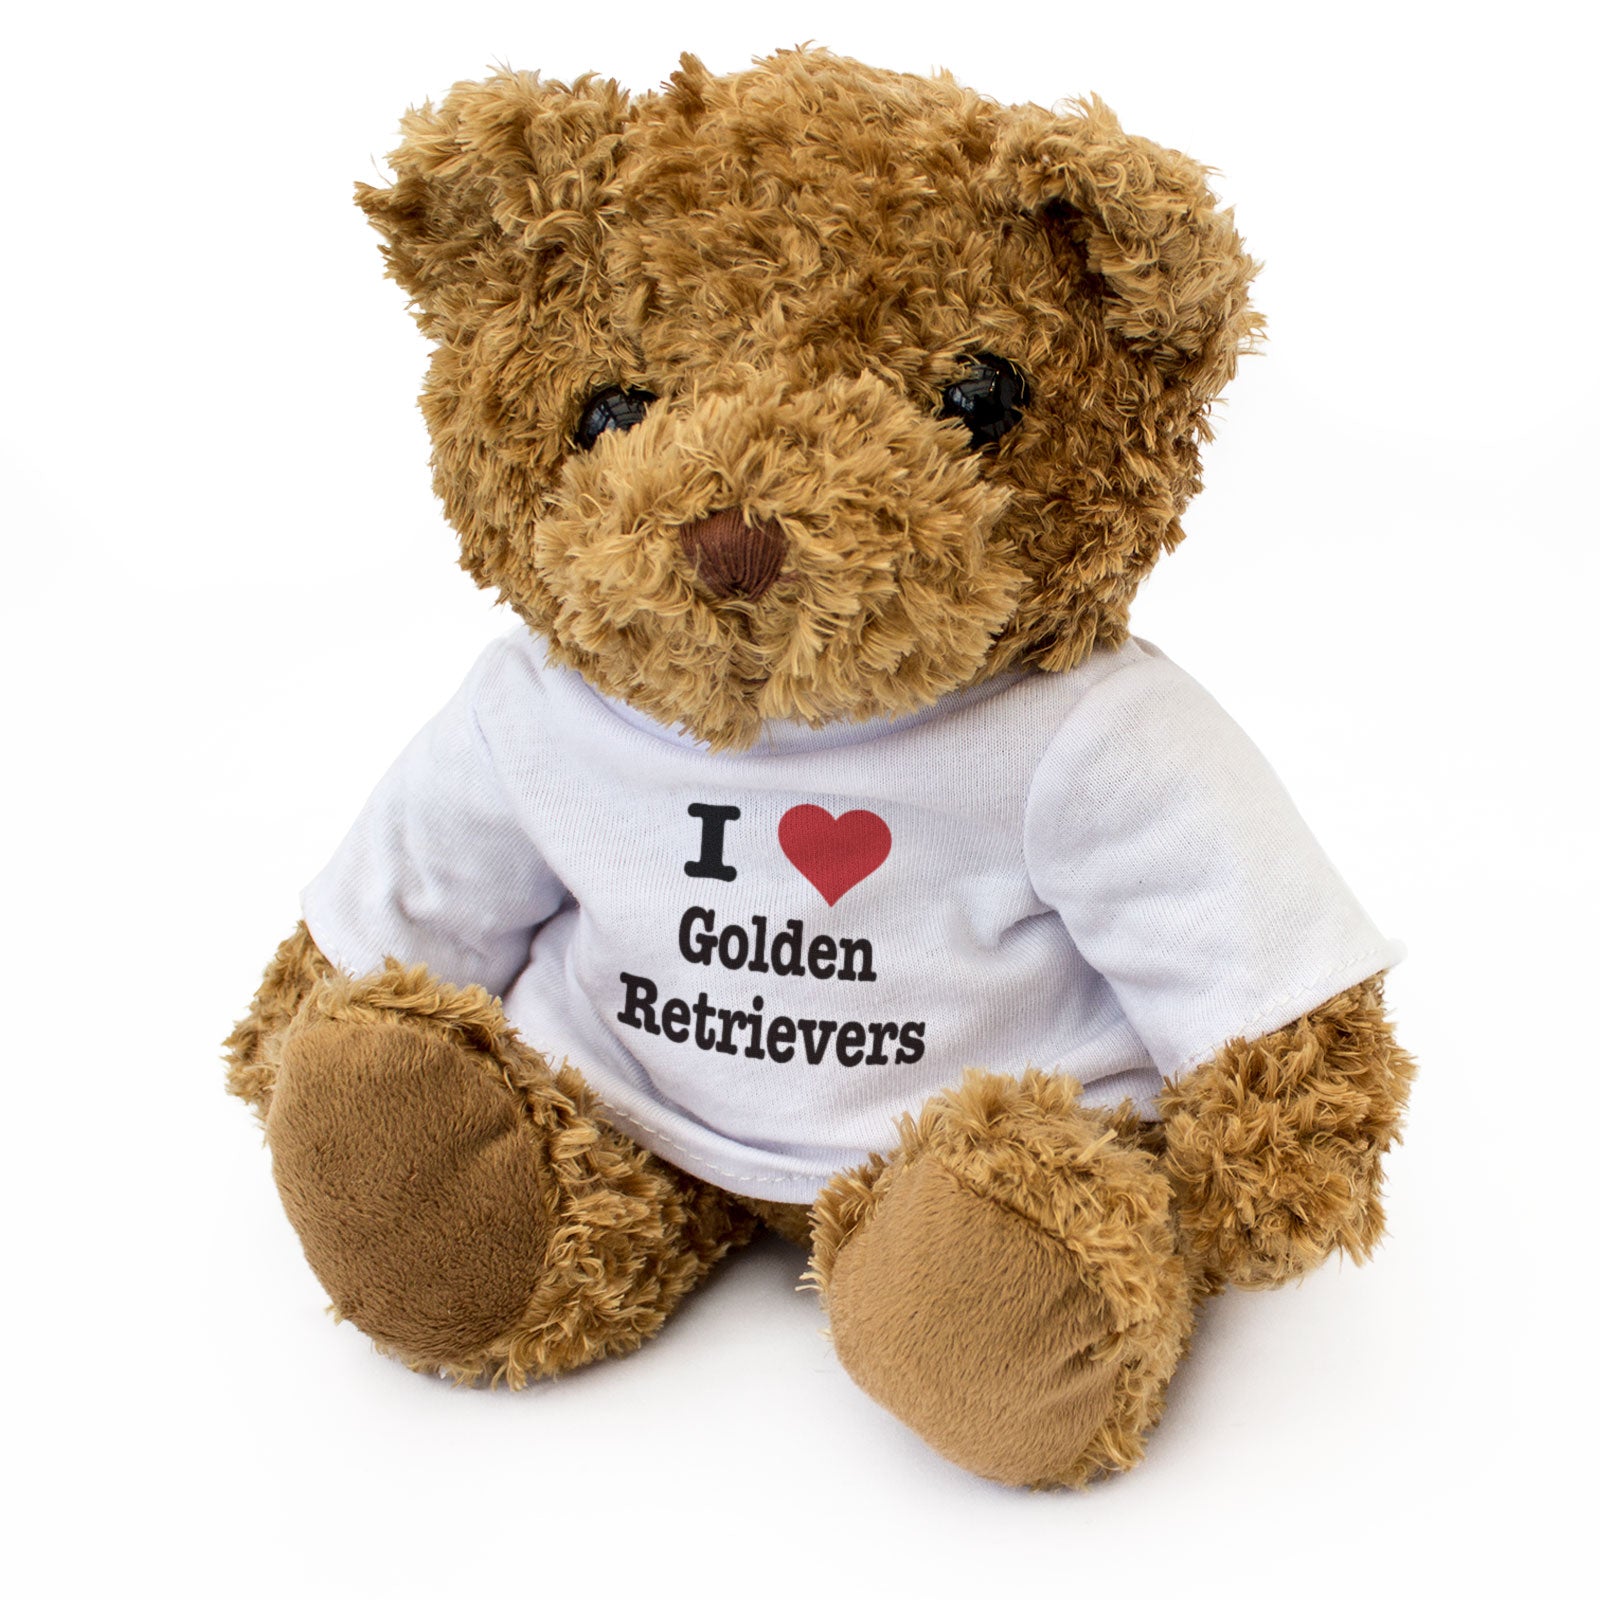 I Love Golden Retrievers - Teddy Bear